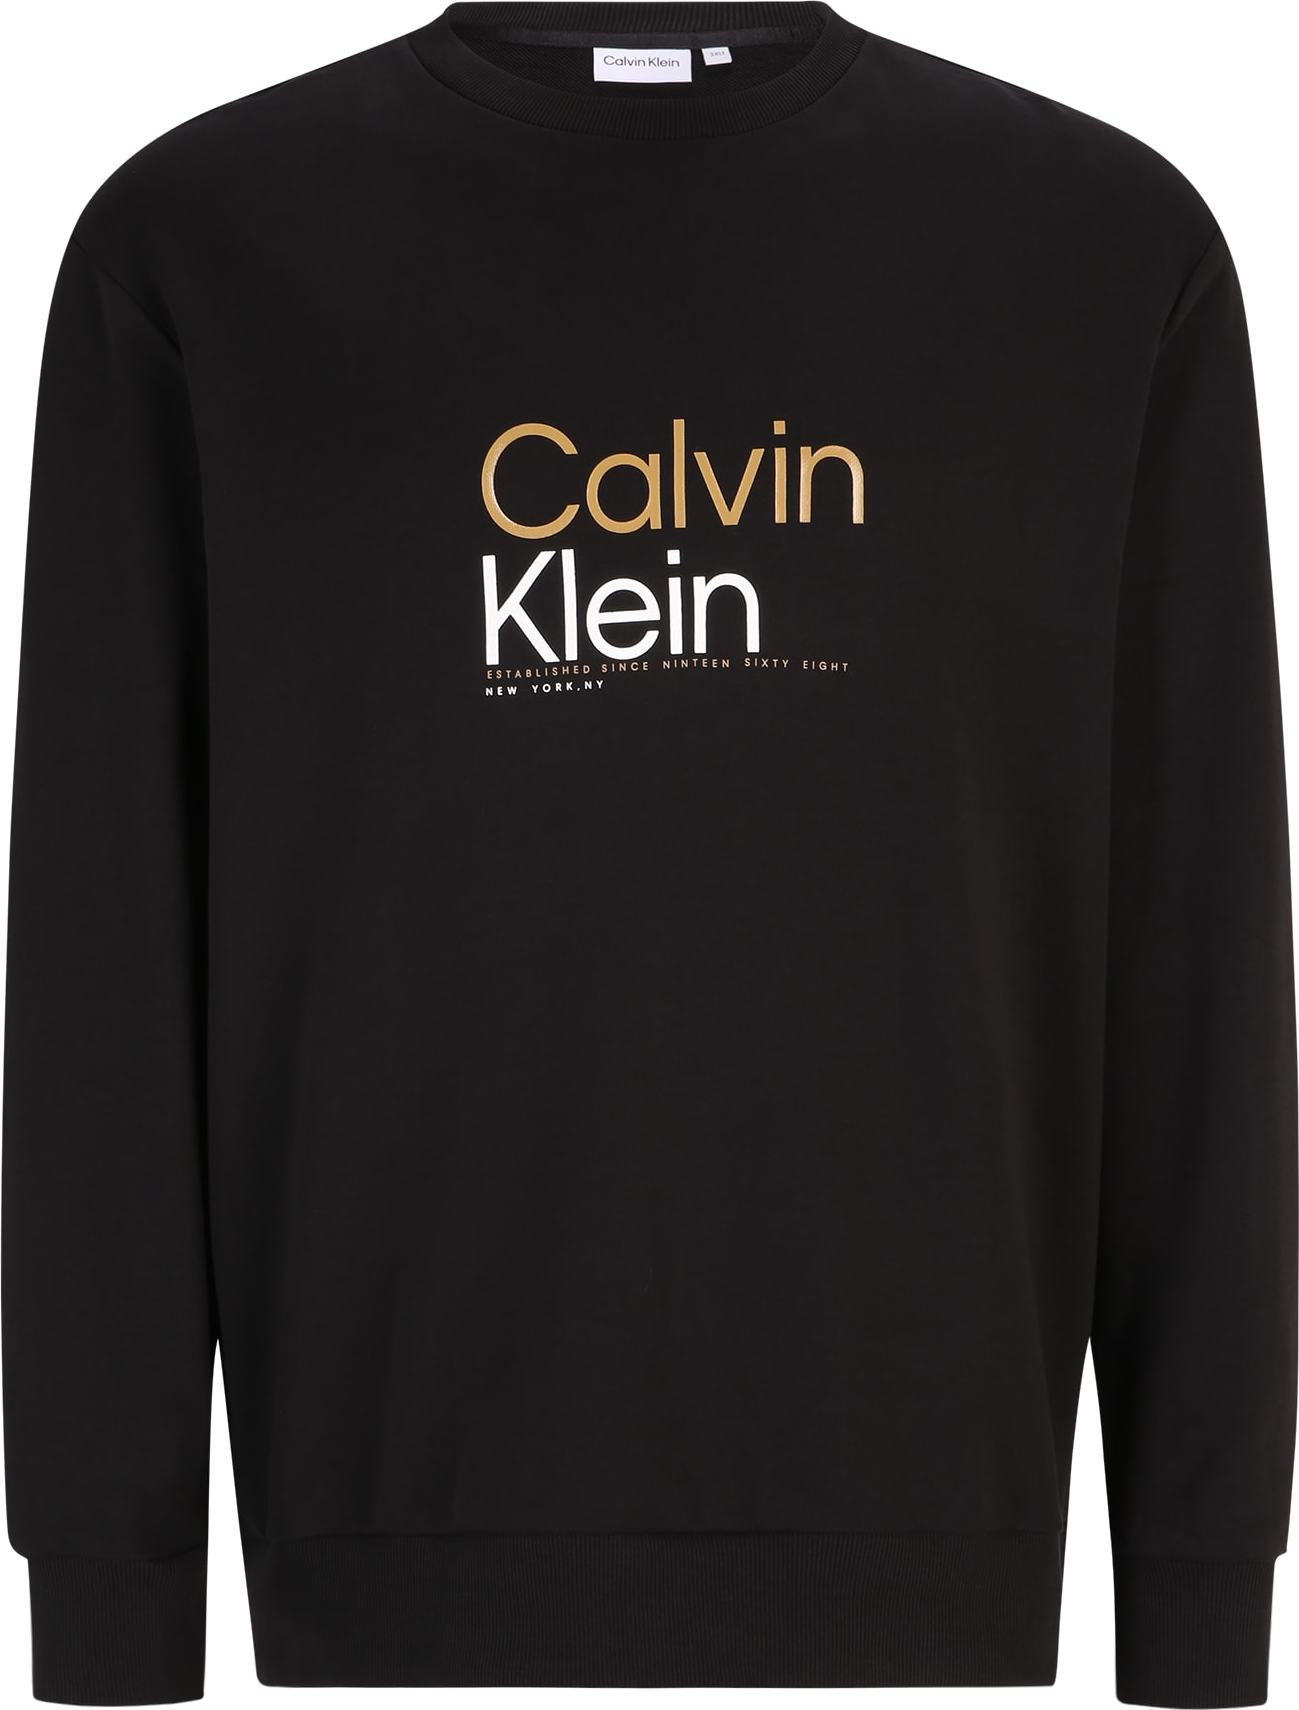 Mikina Calvin Klein Big & Tall oranžová / černá / bílá